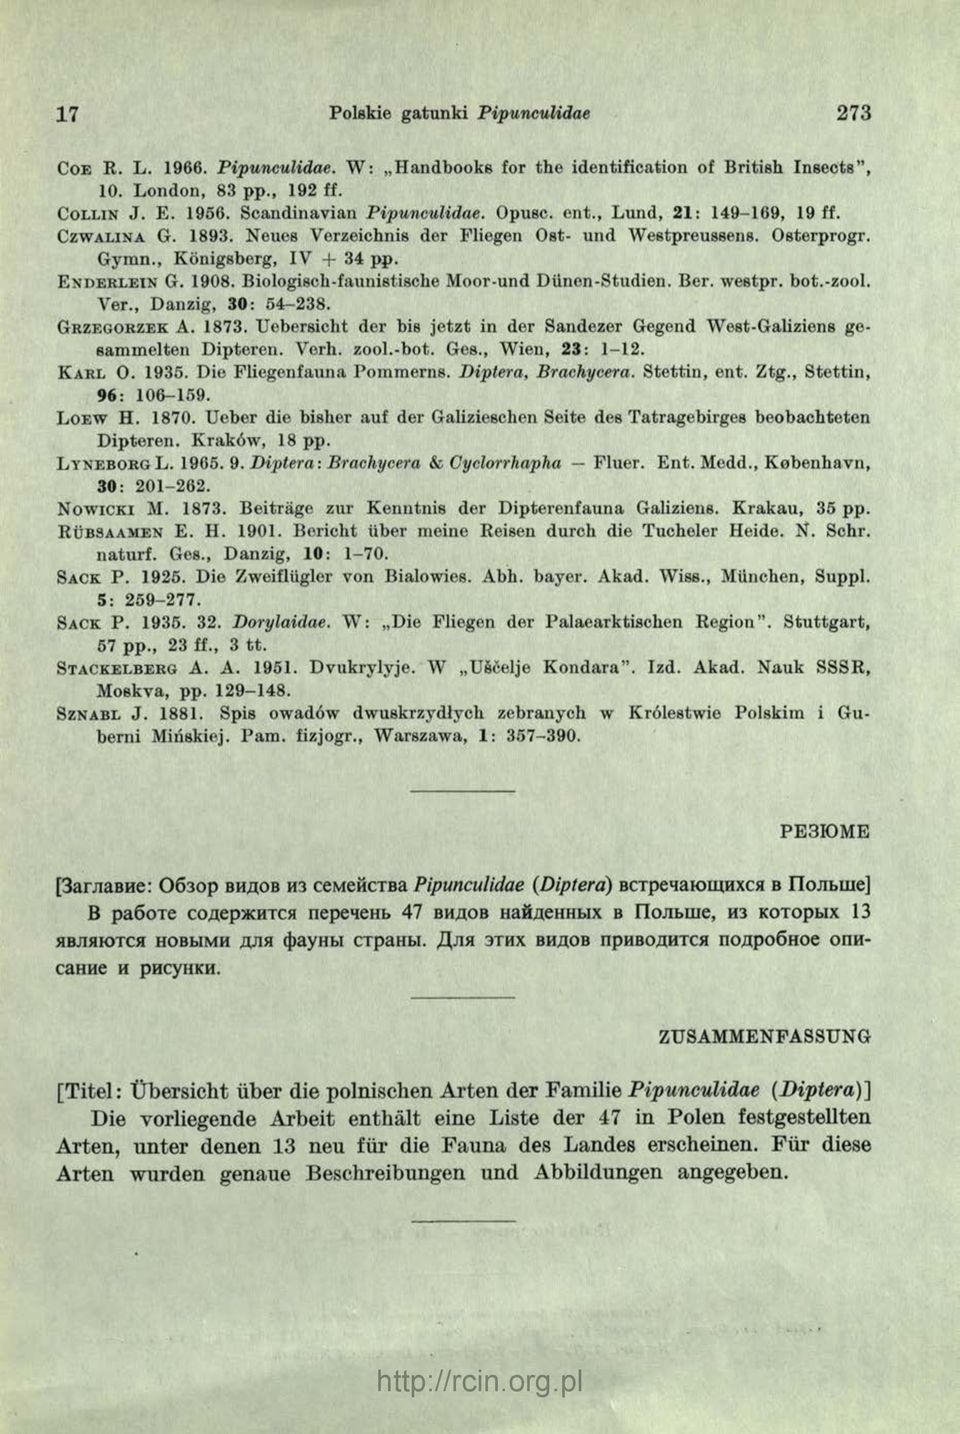 Biologisch-faunistische Moor-und Diinen-Studien. Ber. westpr. bot.-zool. Yer., Danzig, 3 0 : 54-238. G r z e g o r z e k A. 1873.